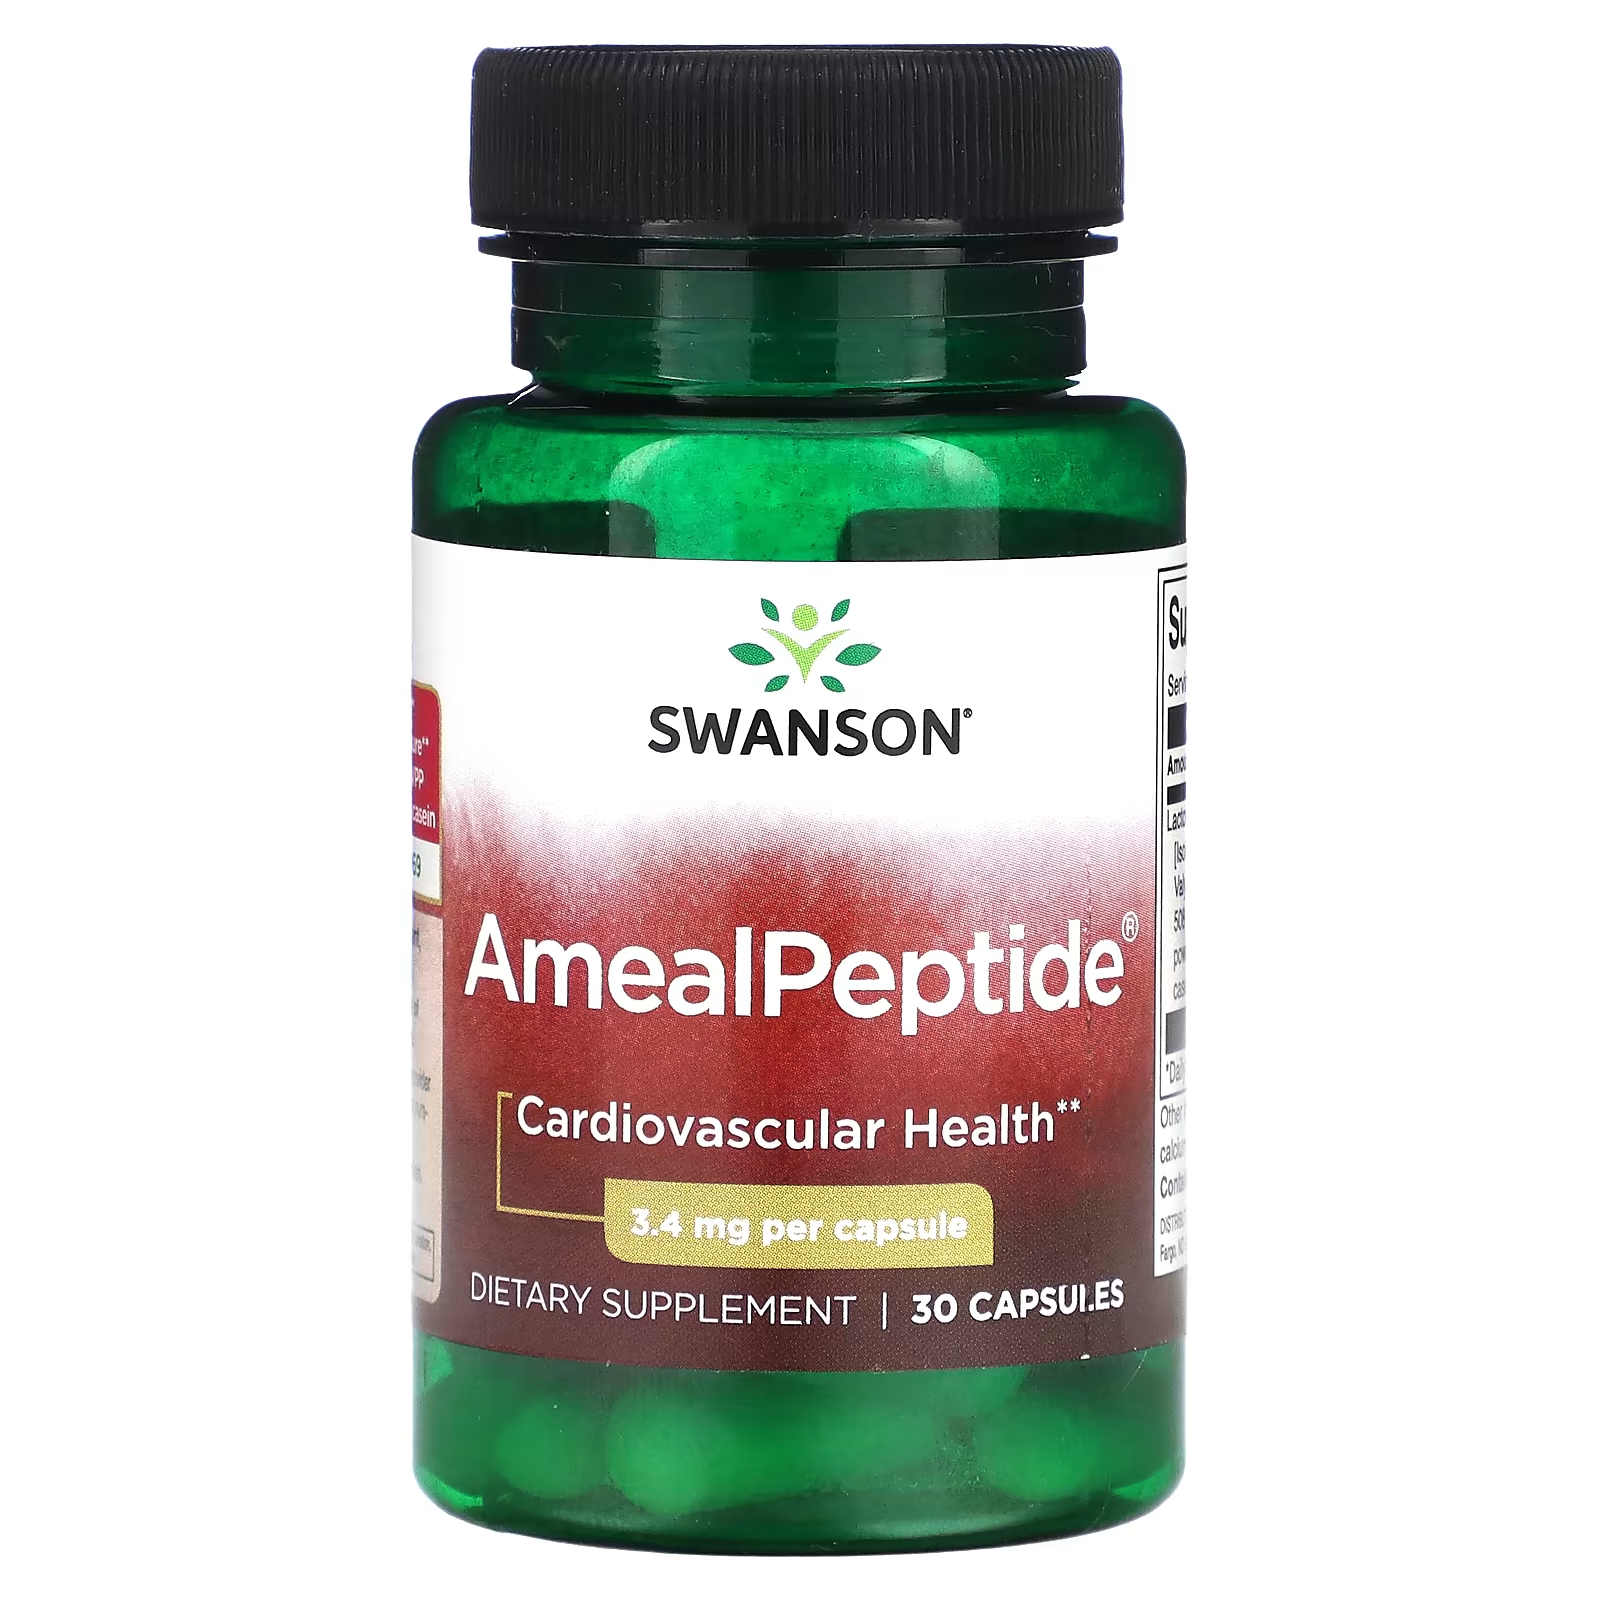 Пищевая добавка Swanson AmealPeptide 34 мг, 30 капсул пищевая добавка swanson wio для снятия стресса 30 капсул